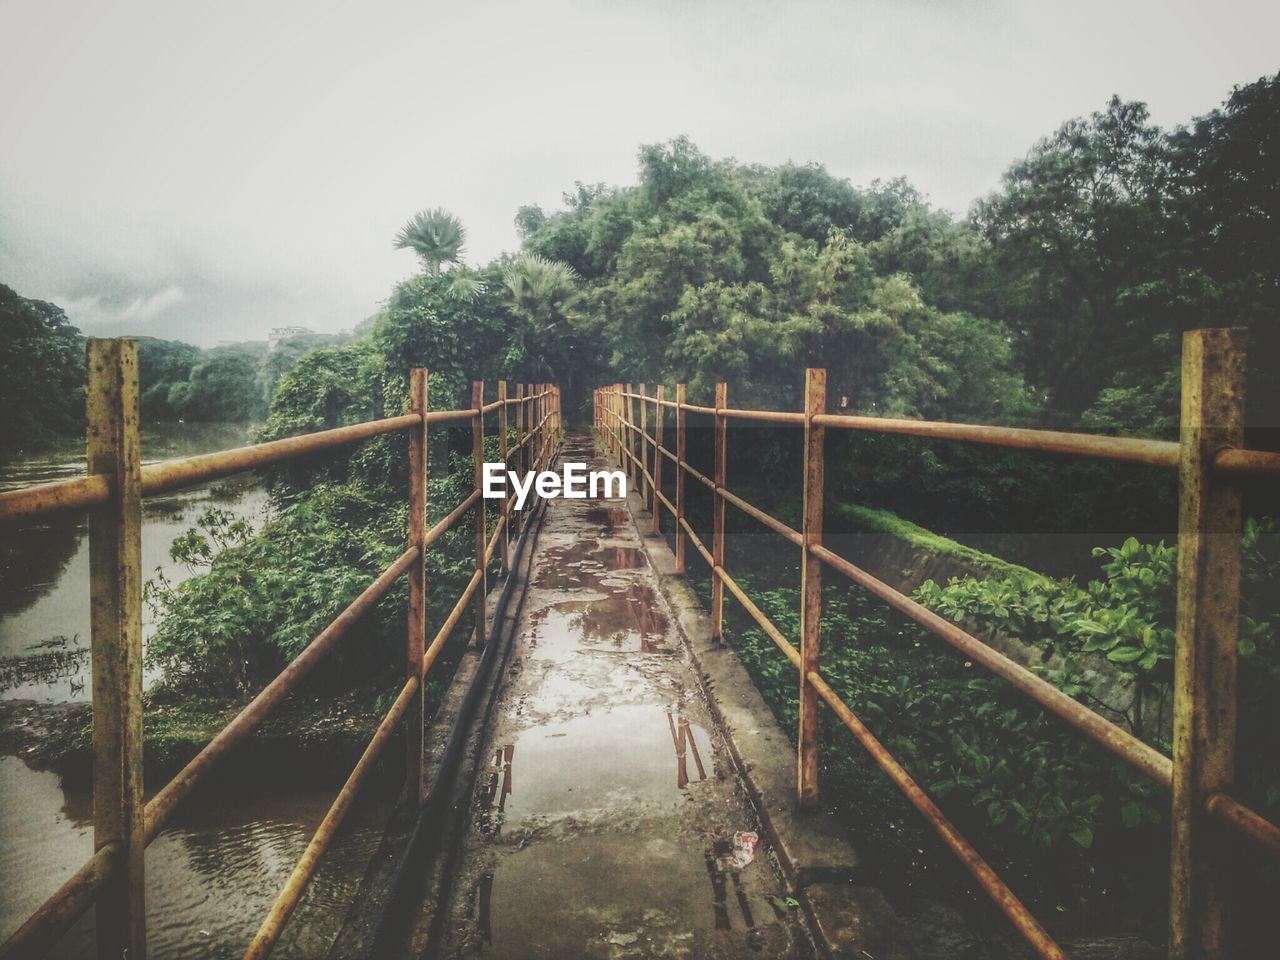 Wet footbridge by trees during monsoon